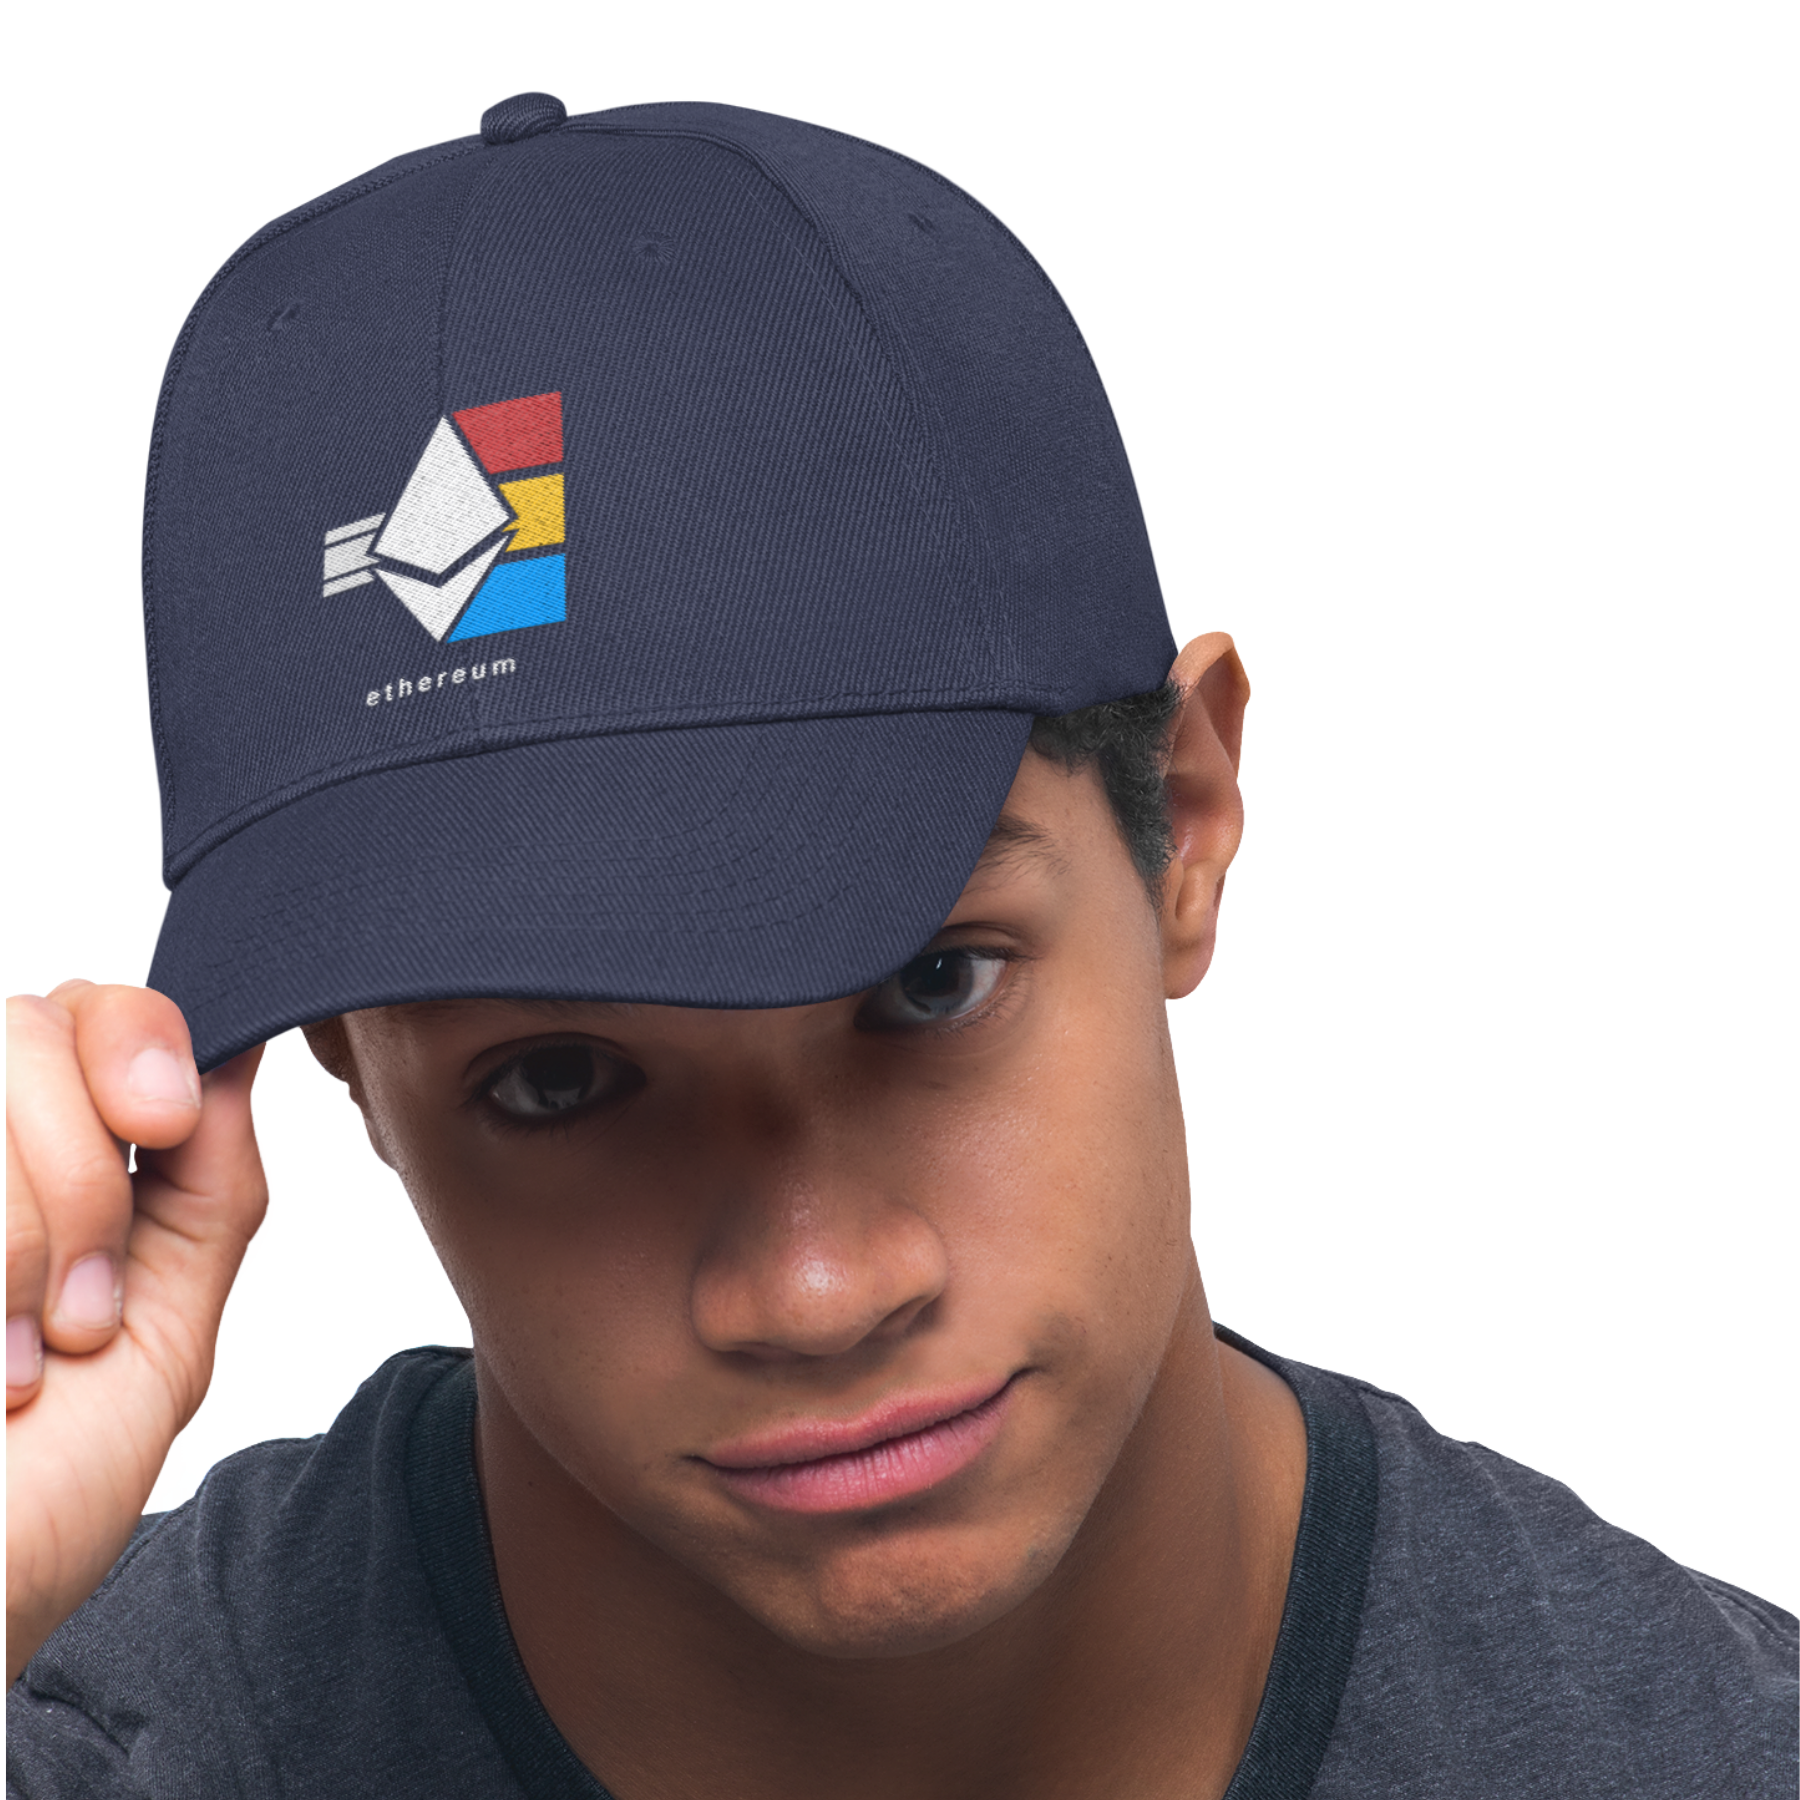 A man wearing an Ethereum cap